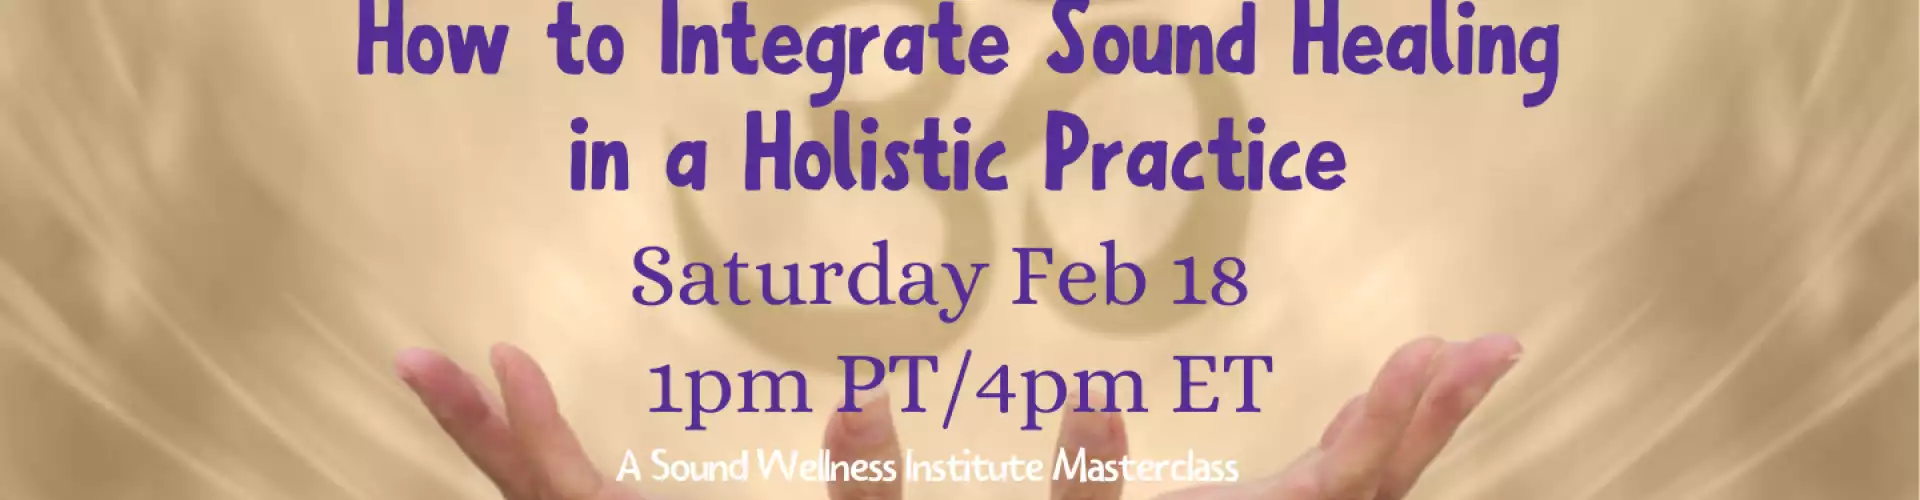 Cómo integrar la curación con sonidos en una práctica holística